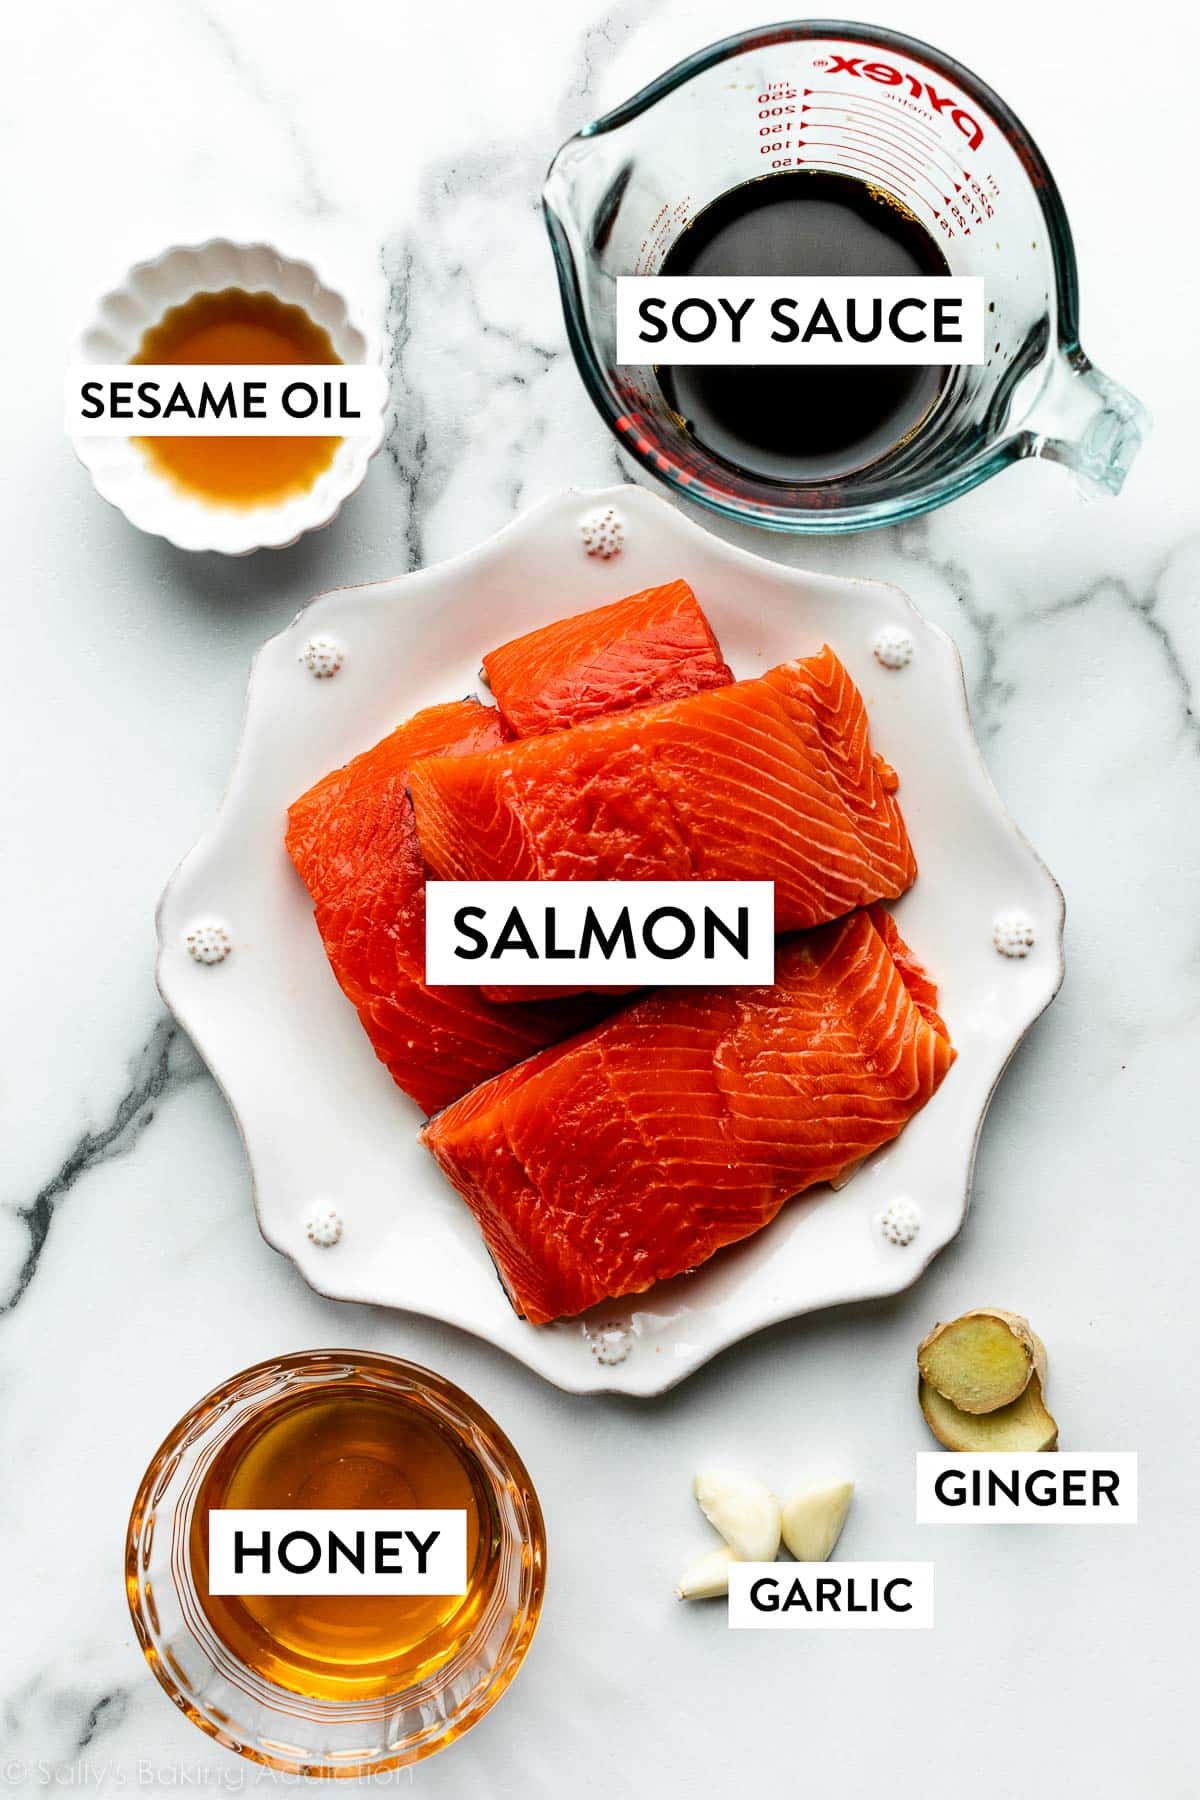 salmón en un plato blanco con ingredientes dispuestos a su alrededor, como salsa de soja, aceite de sésamo, jengibre fresco, ajo y miel.